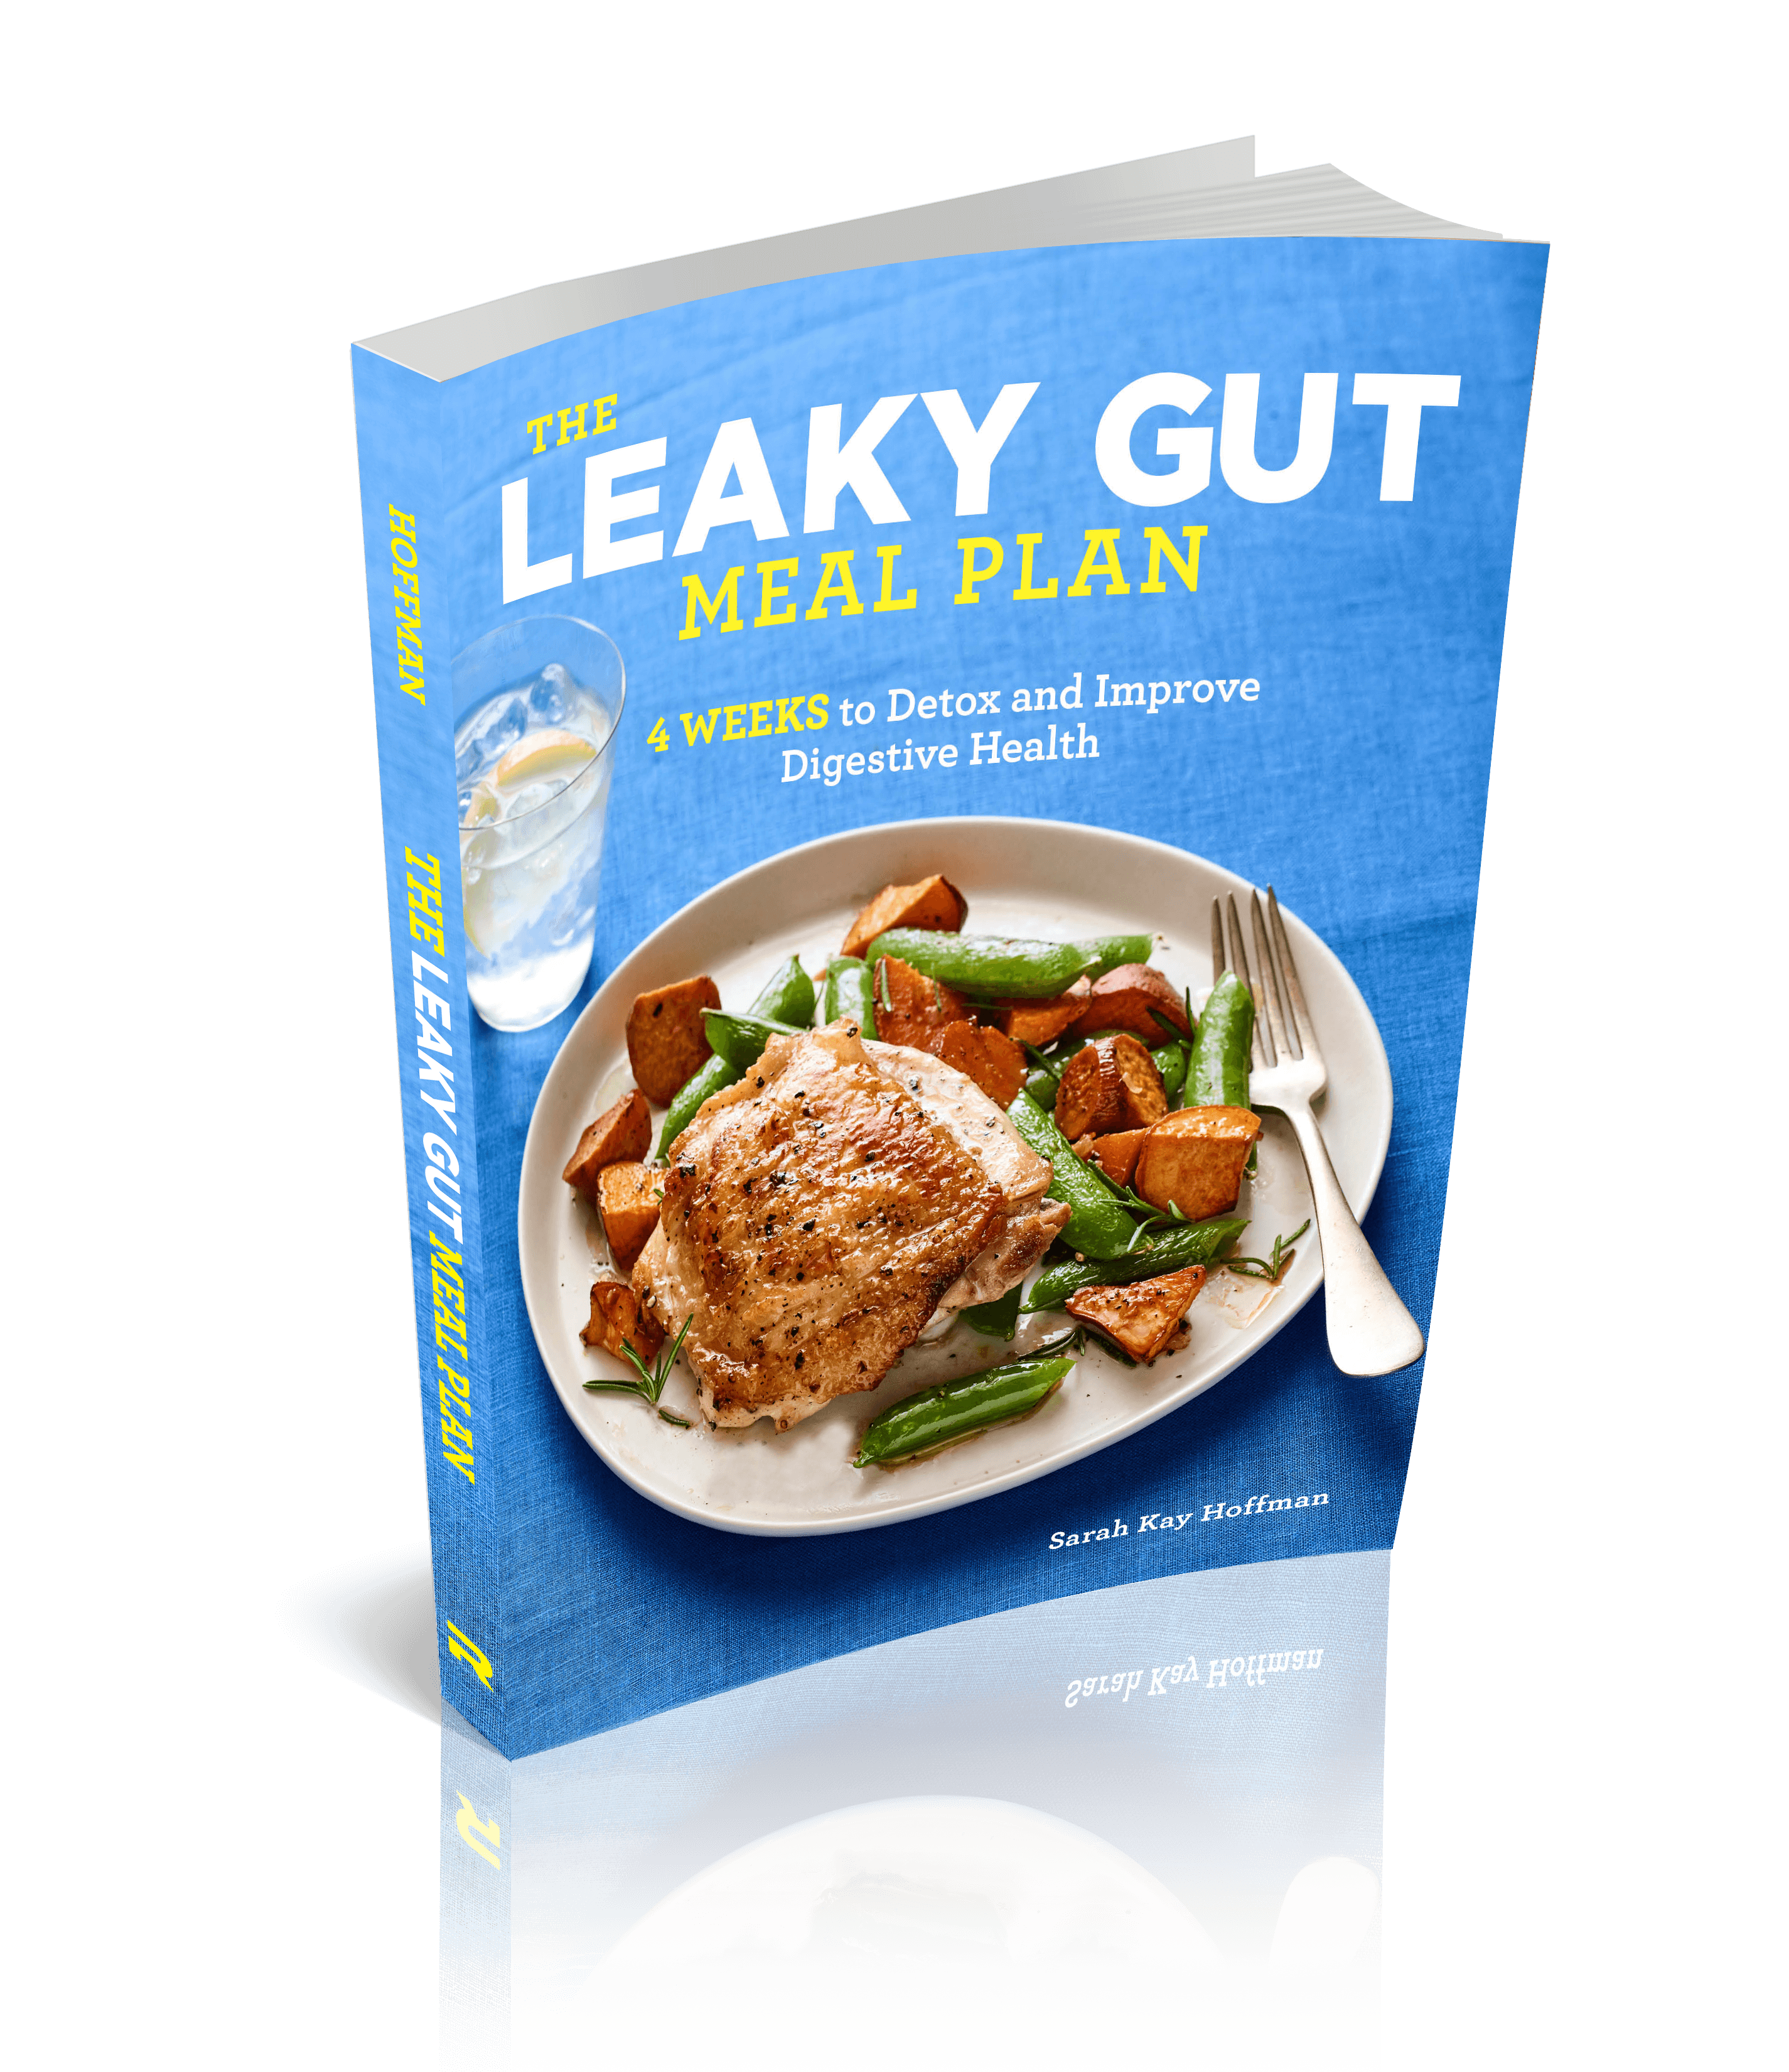 75 Recipes in The Leaky Gut Meal Plan book agutsygirl.com #leakygut #leakygutdiet #guthealing